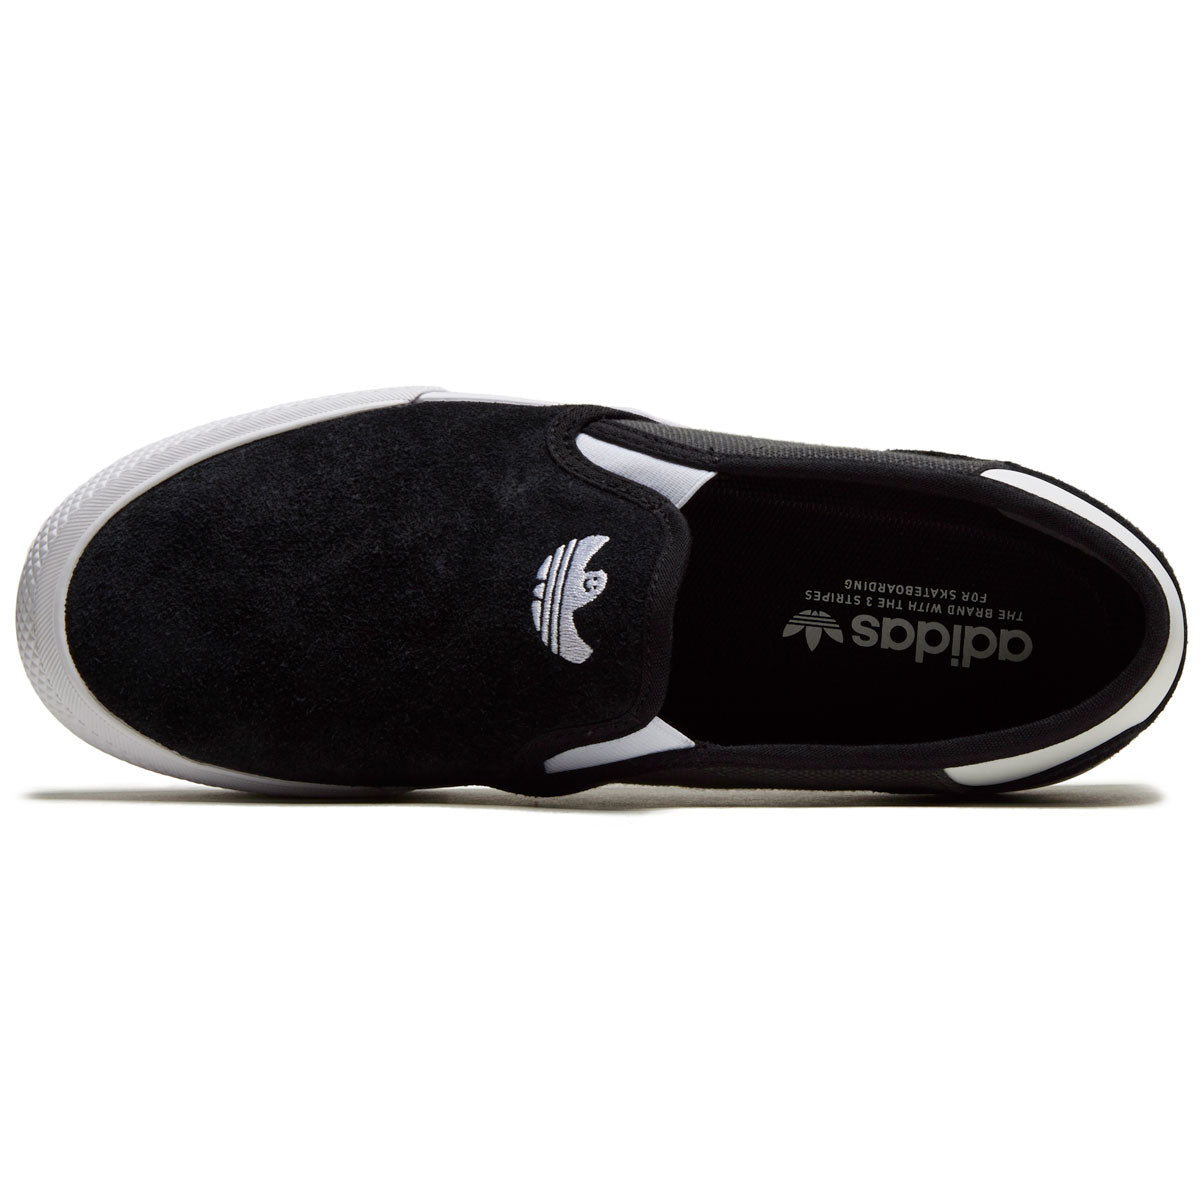 Adidas Shmoofoil Slip On Shoes - Core Black/Grey/White image 3